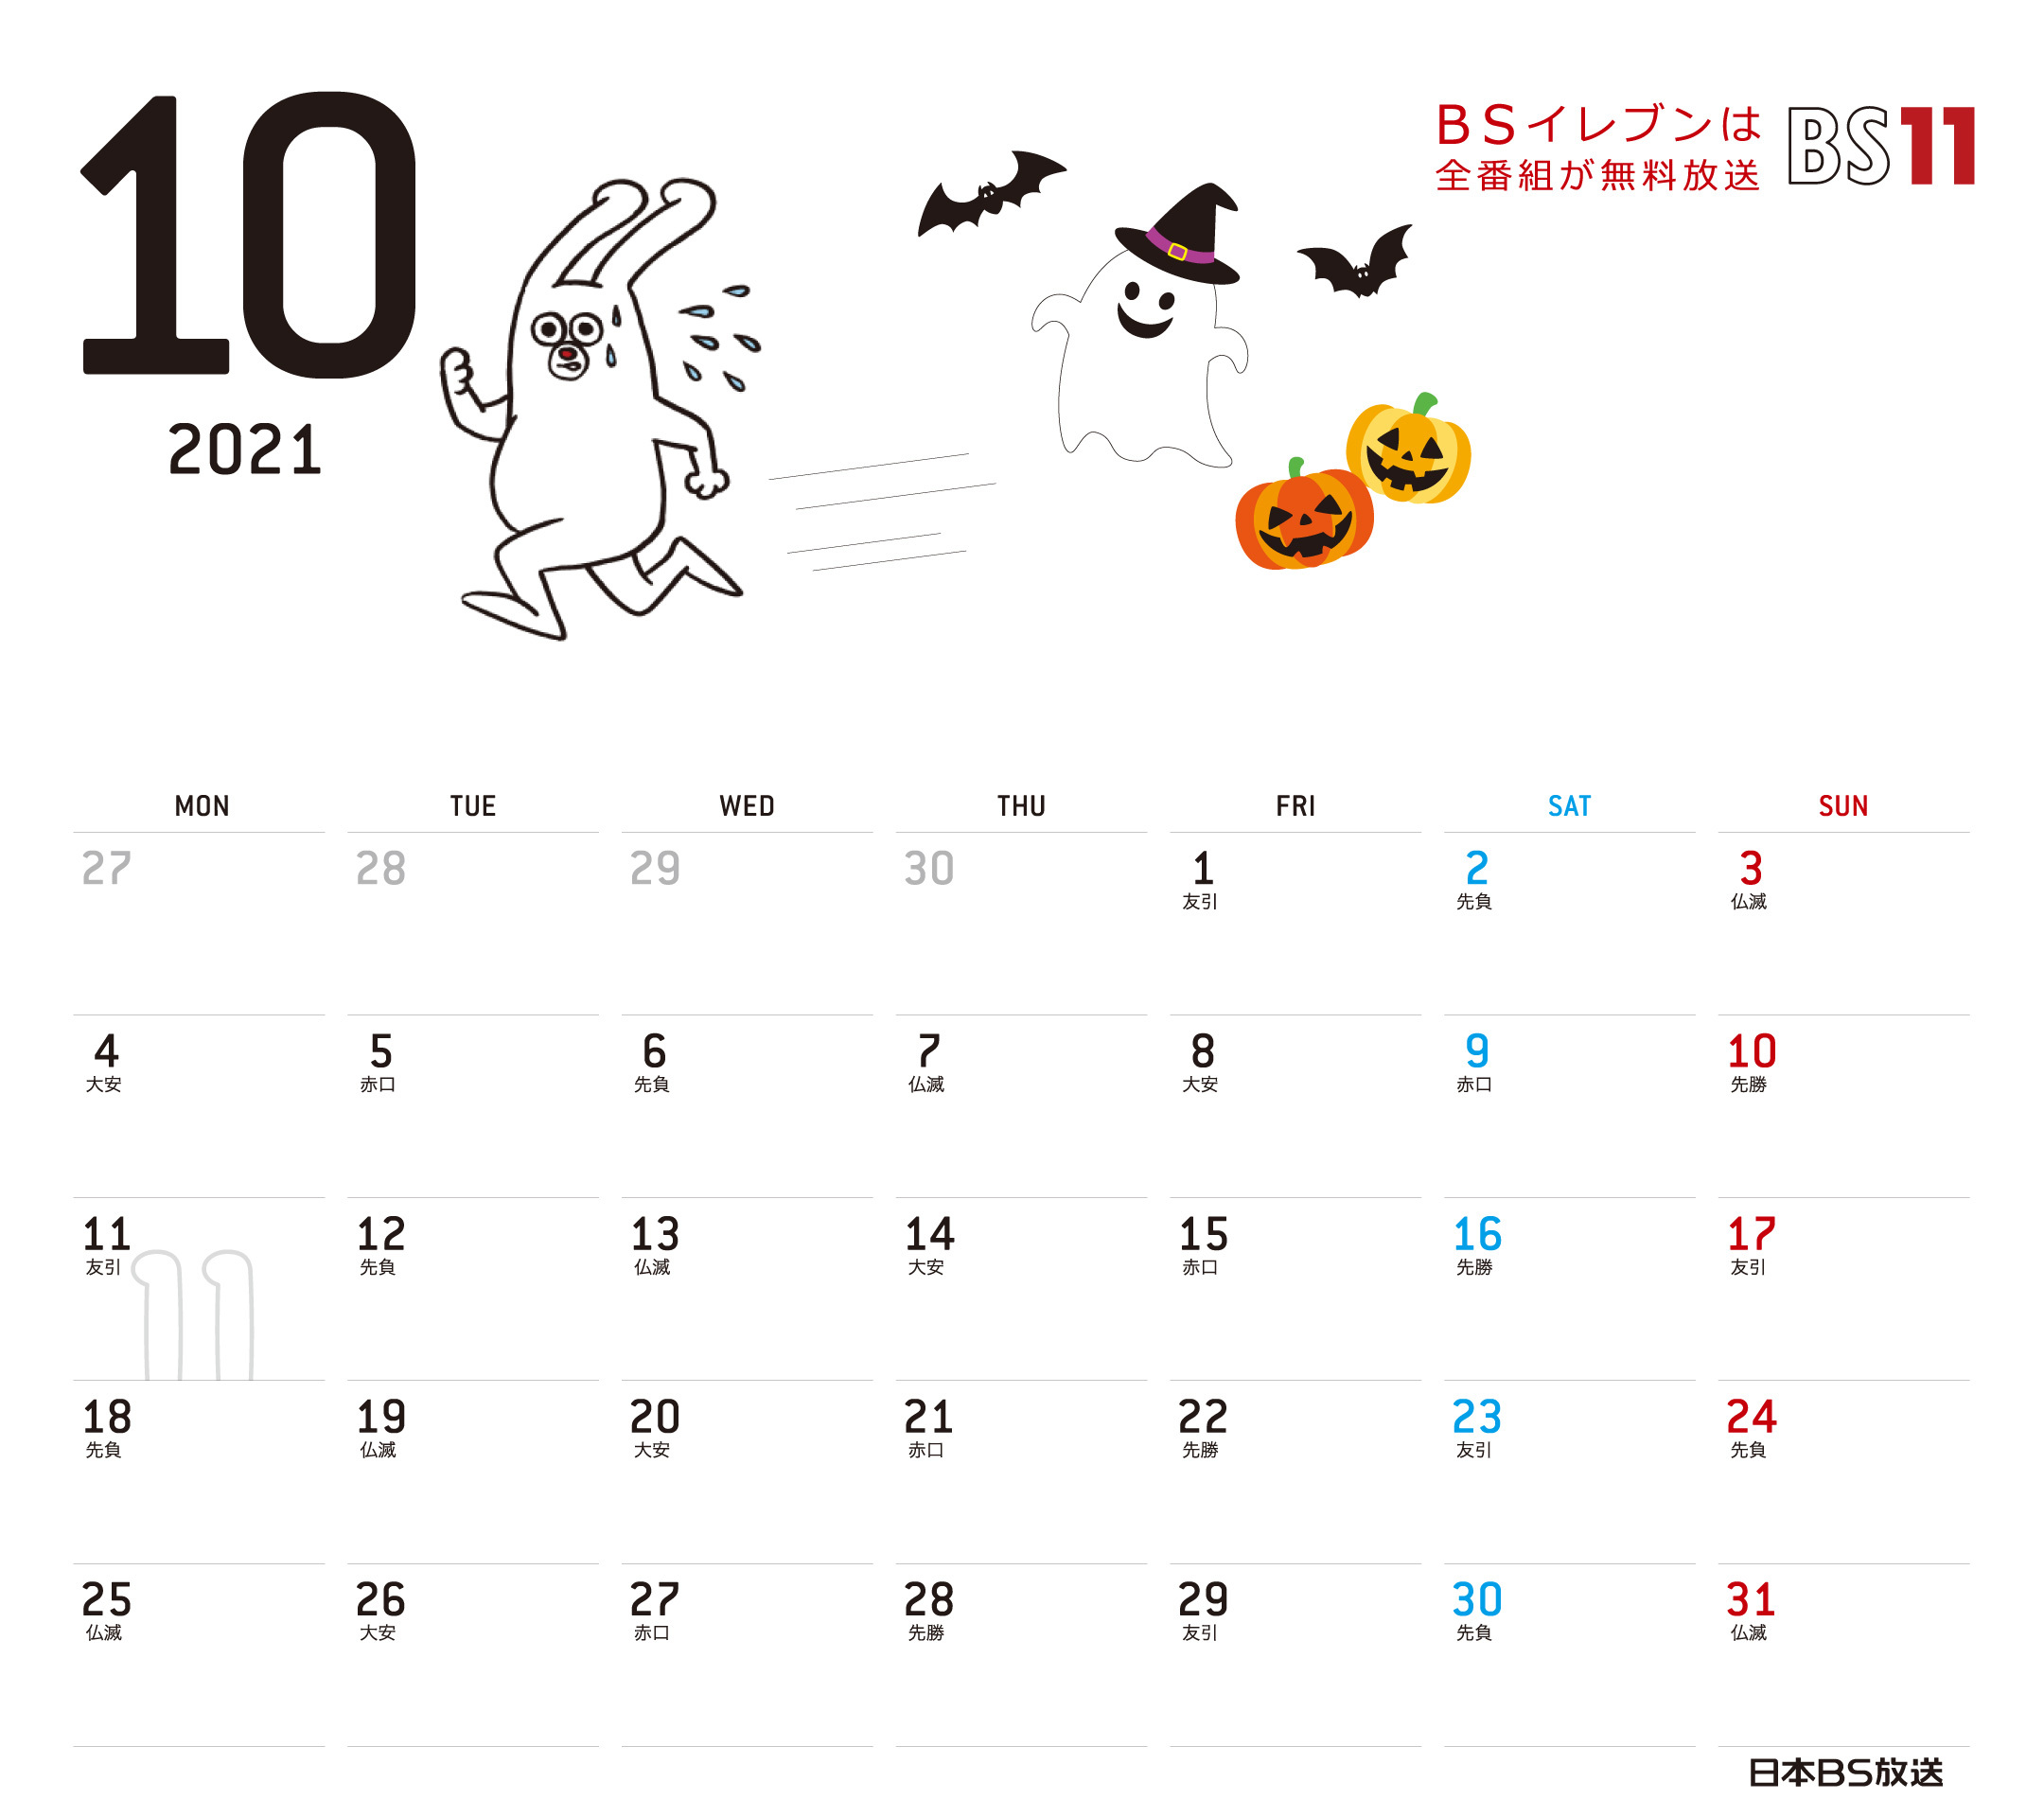 Spデジタルカレンダー21年10月 Bs11 イレブン いつでも無料放送